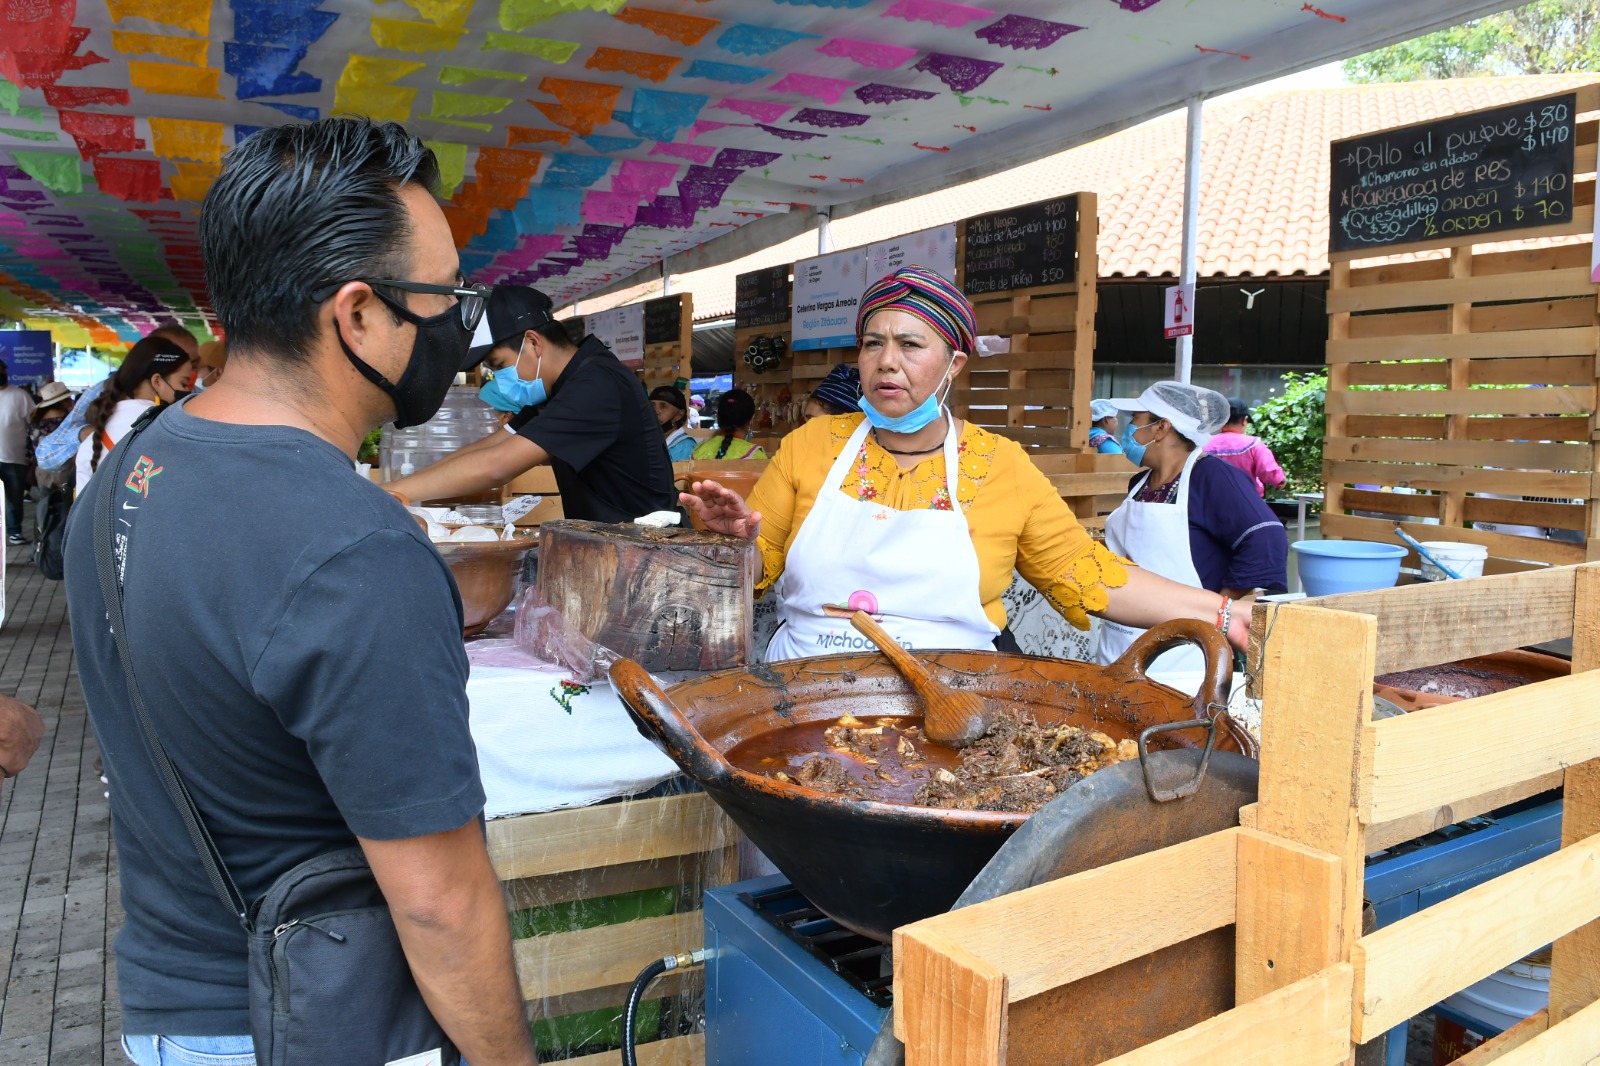 Festival Michoacán de Origen mostrará riqueza cultural del estado